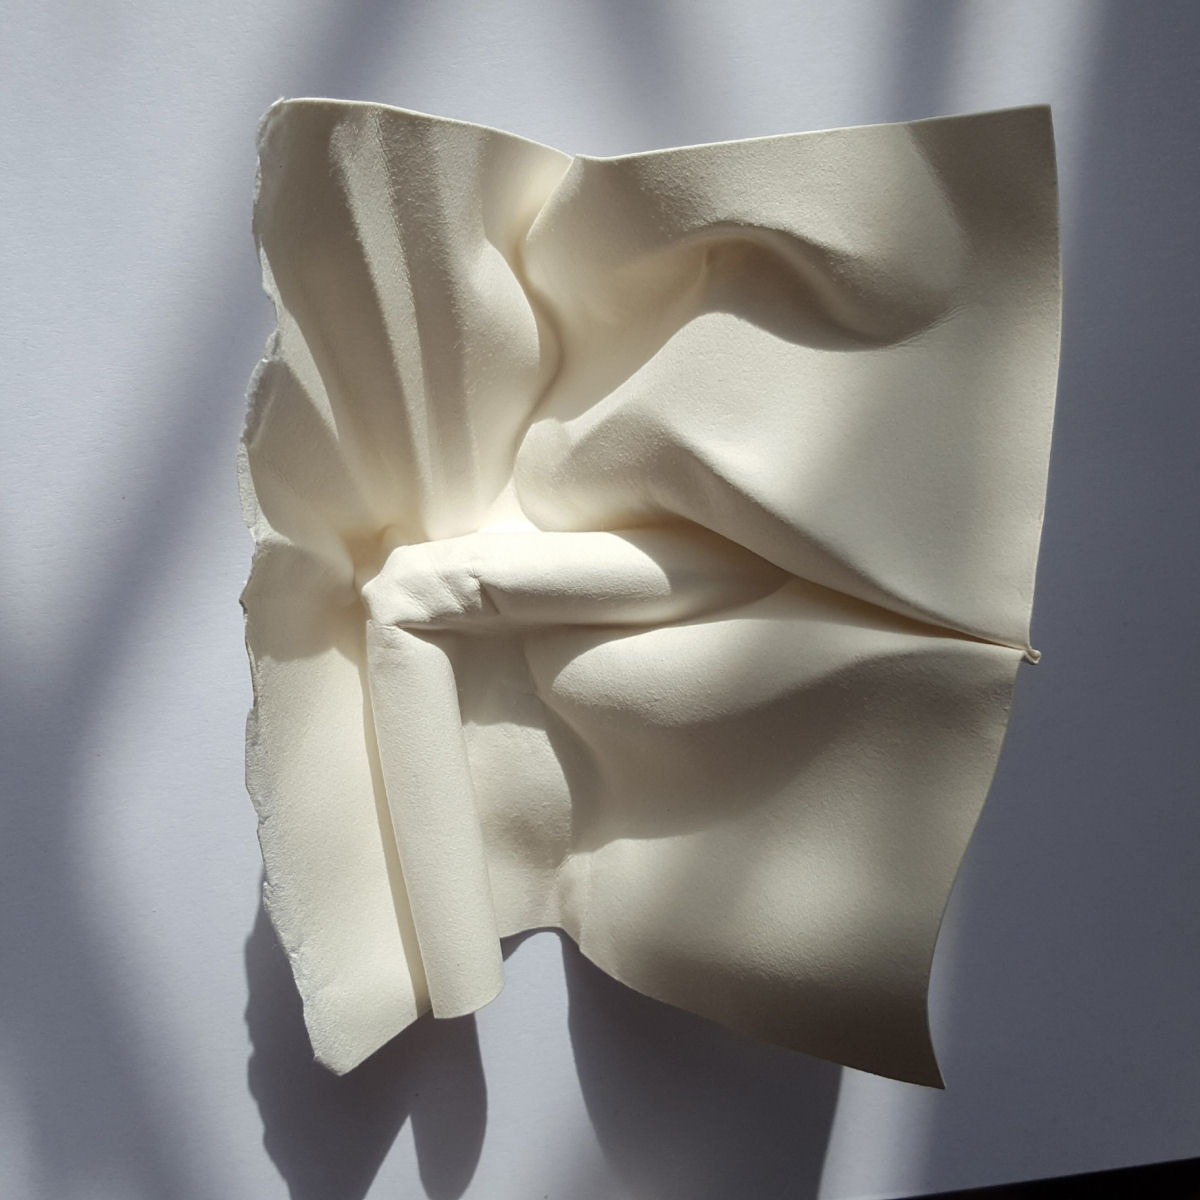 Esculturas sensuais em simples folhas de papel sugerem momentos de intimidade 13